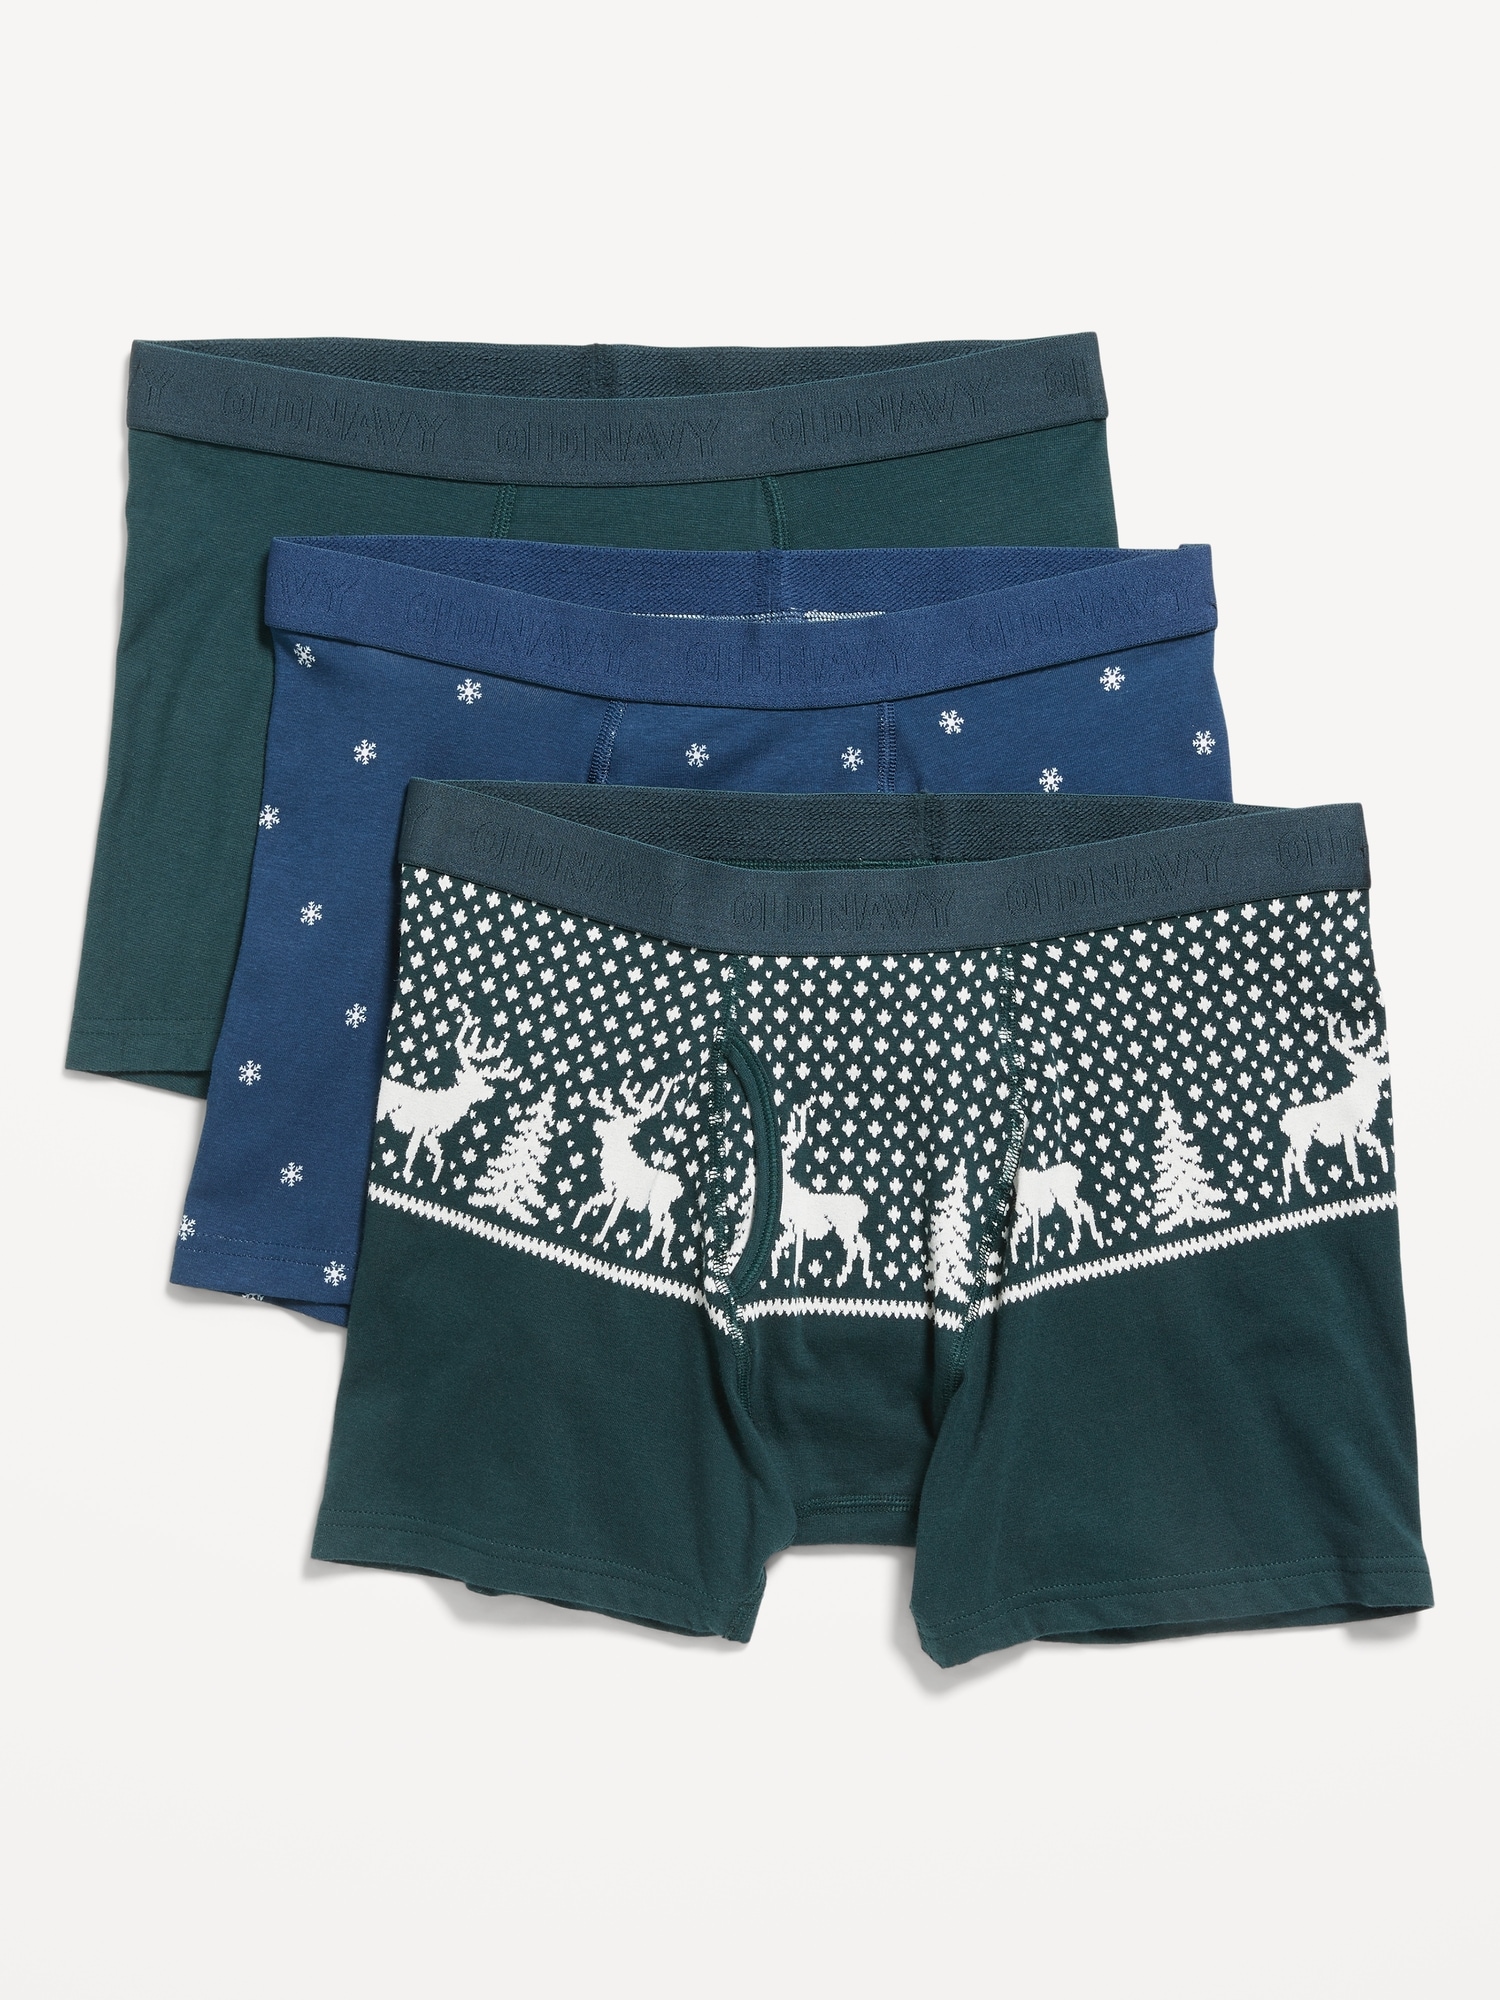 Underwear Briefs Variety 7-Pack for Boys